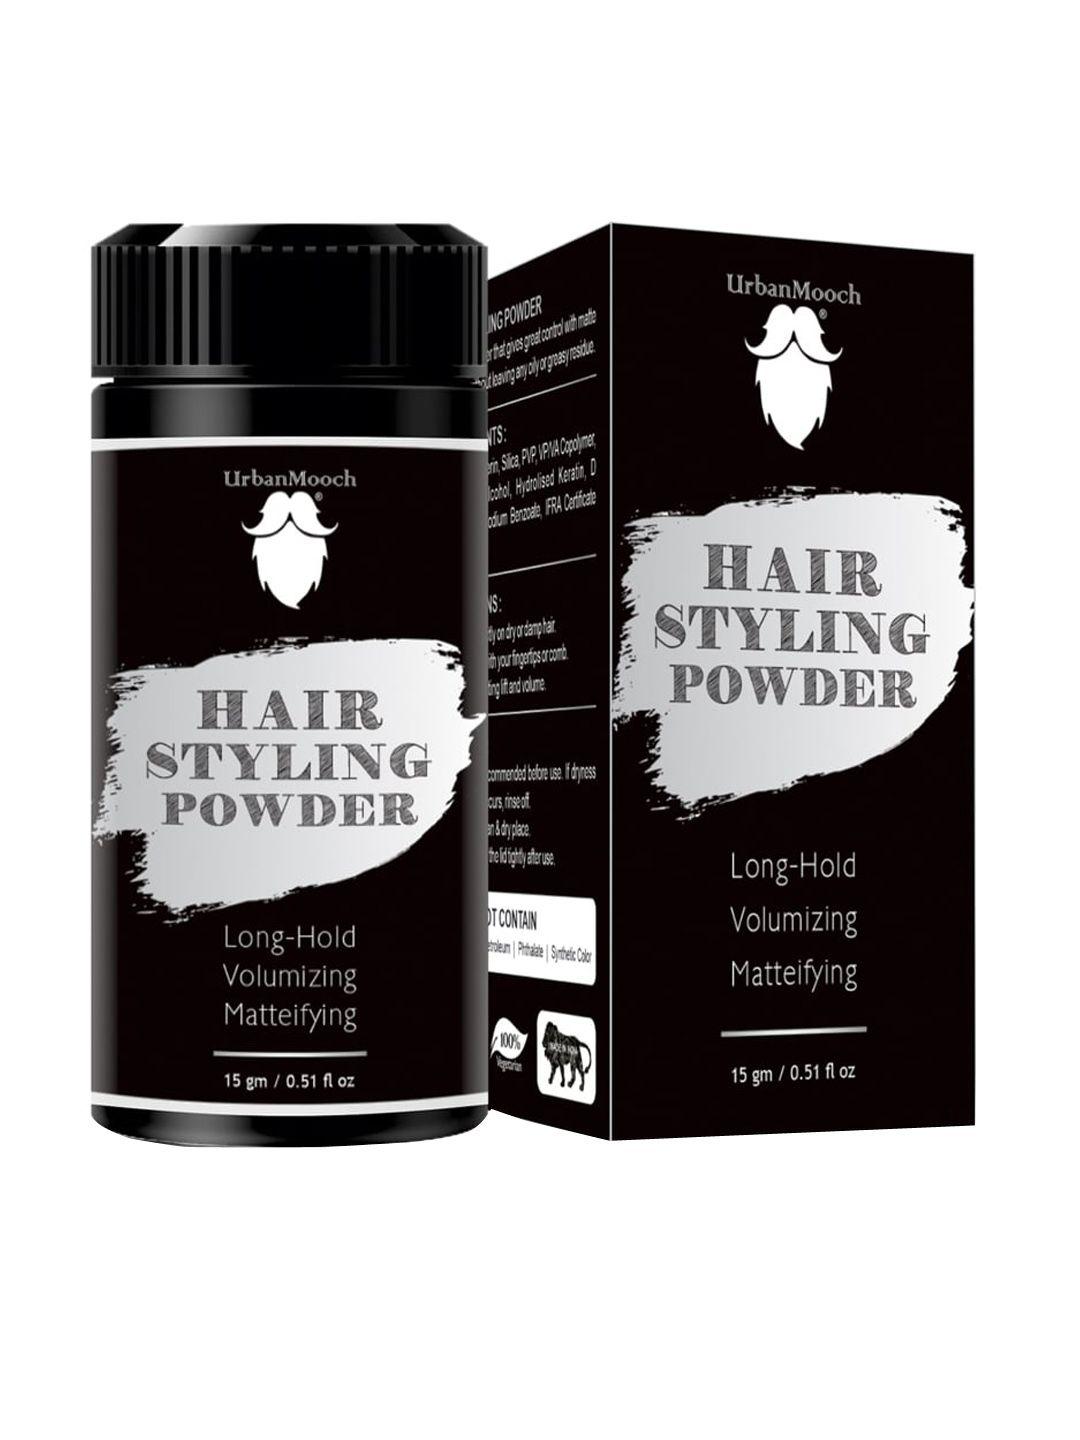 urbanmooch hair styling powder 15gm